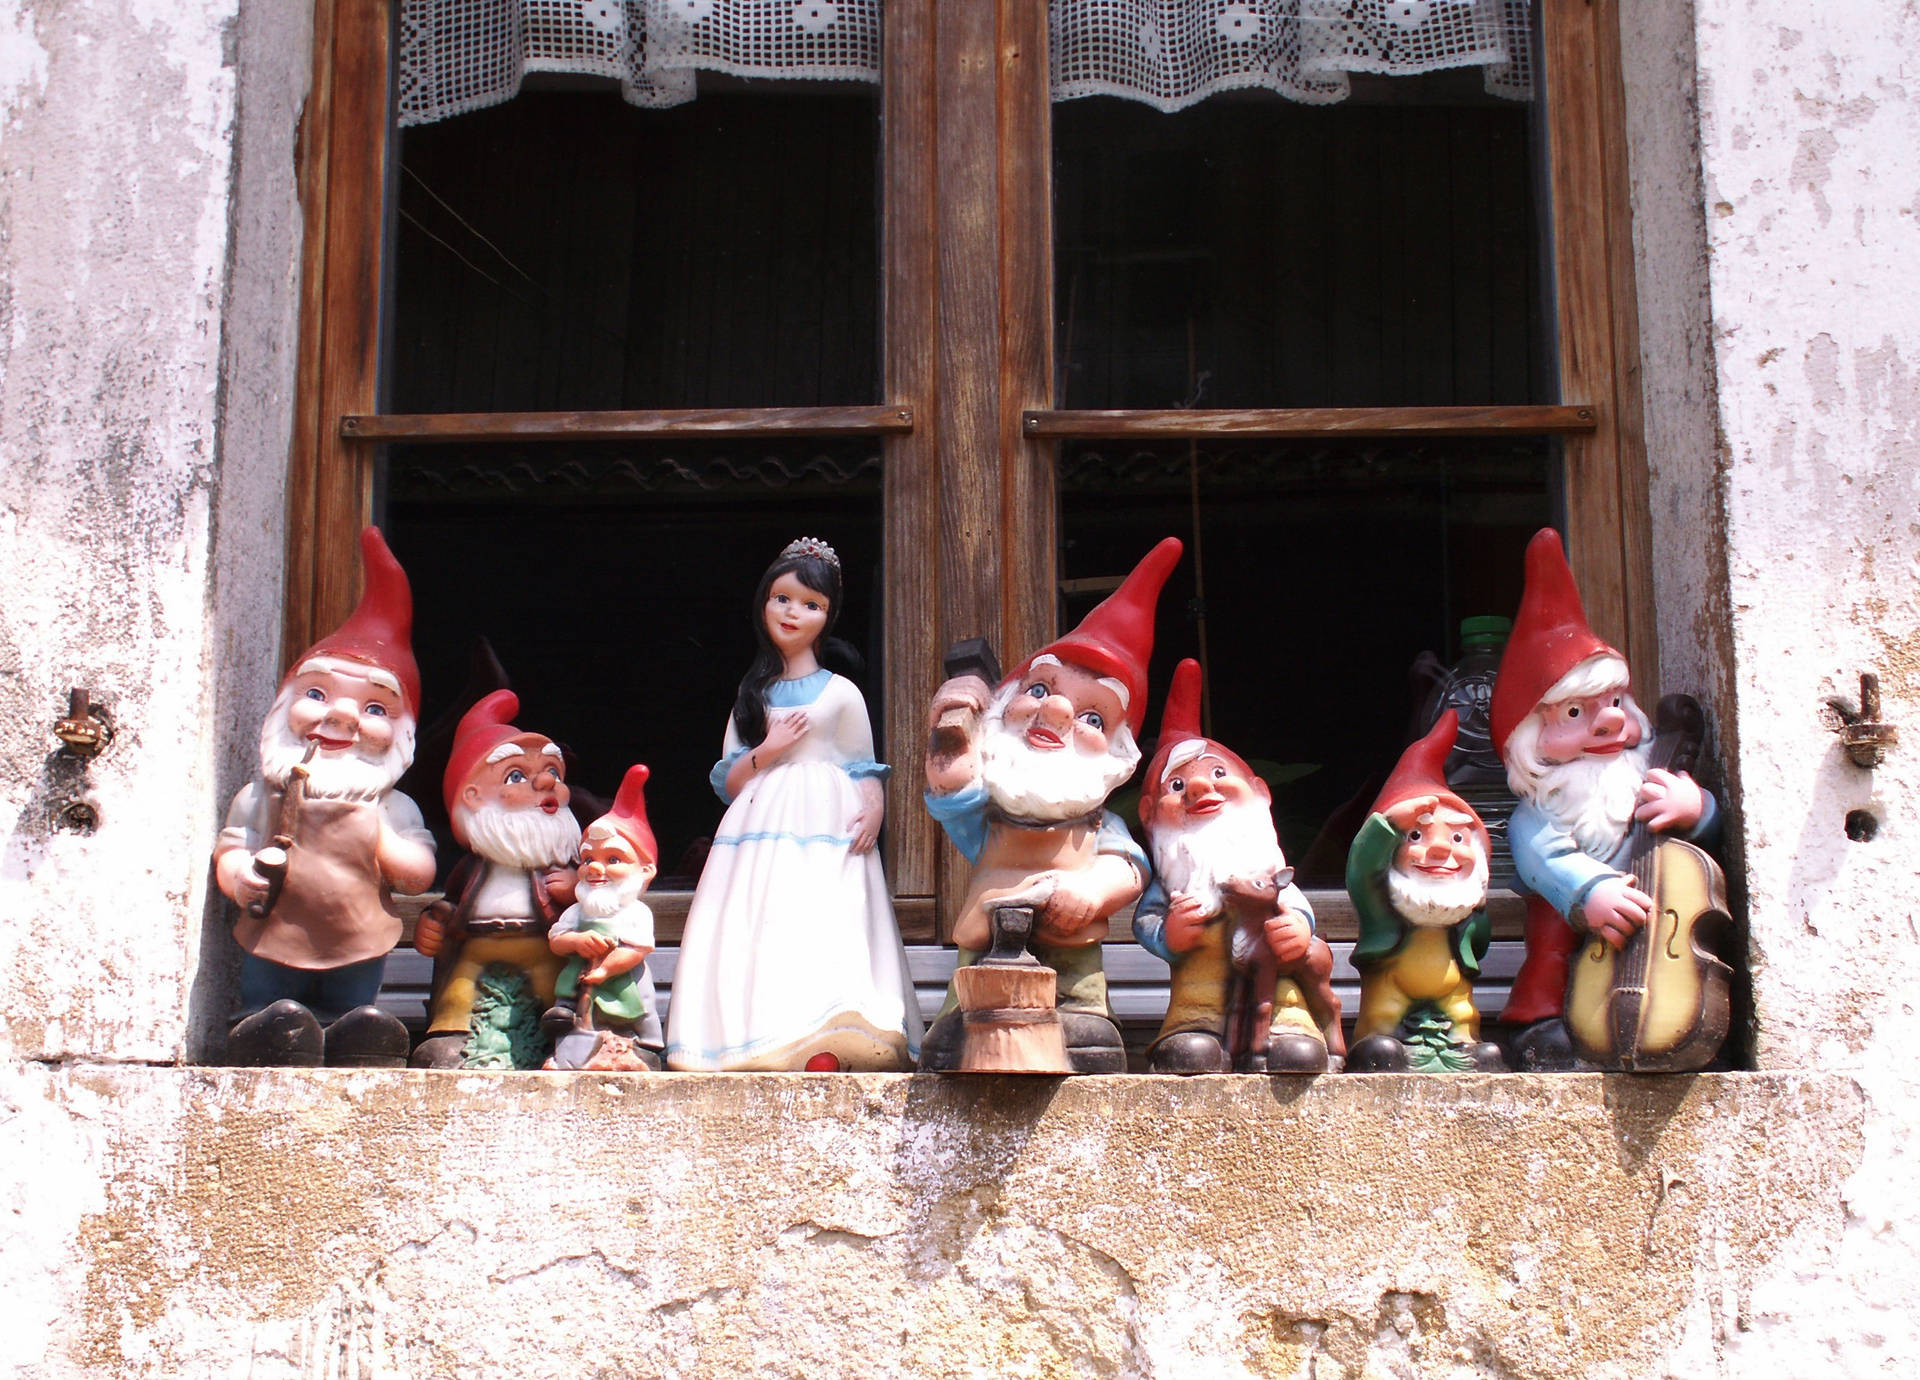 Seven Dwarfs Figurine Background